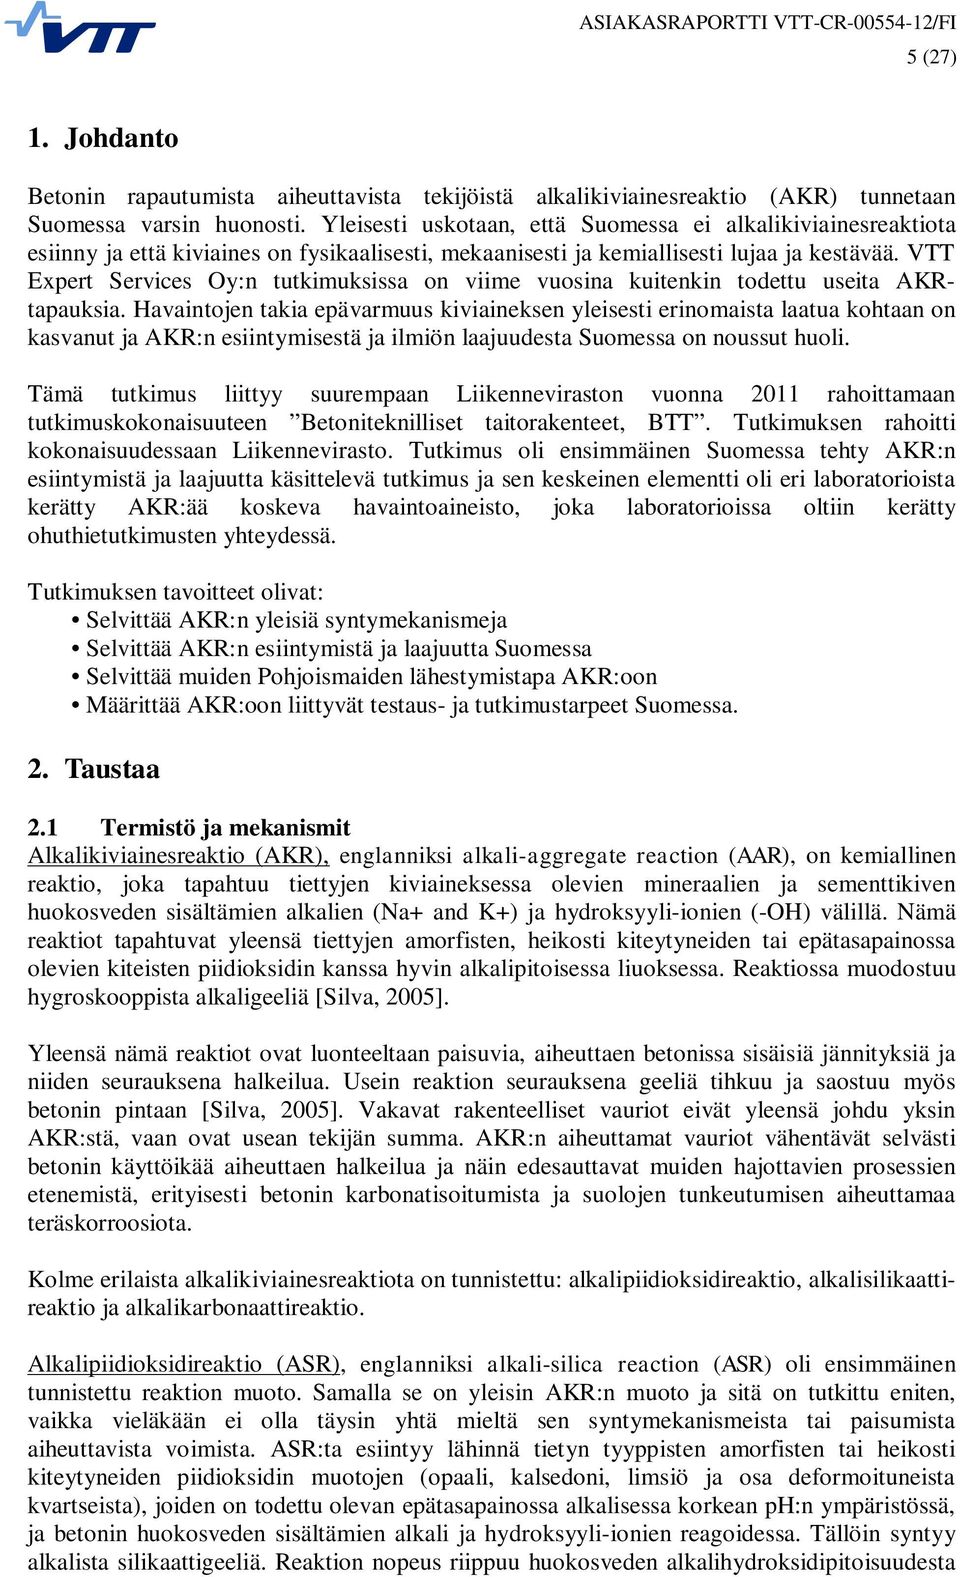 VTT Expert Services Oy:n tutkimuksissa on viime vuosina kuitenkin todettu useita AKRtapauksia.